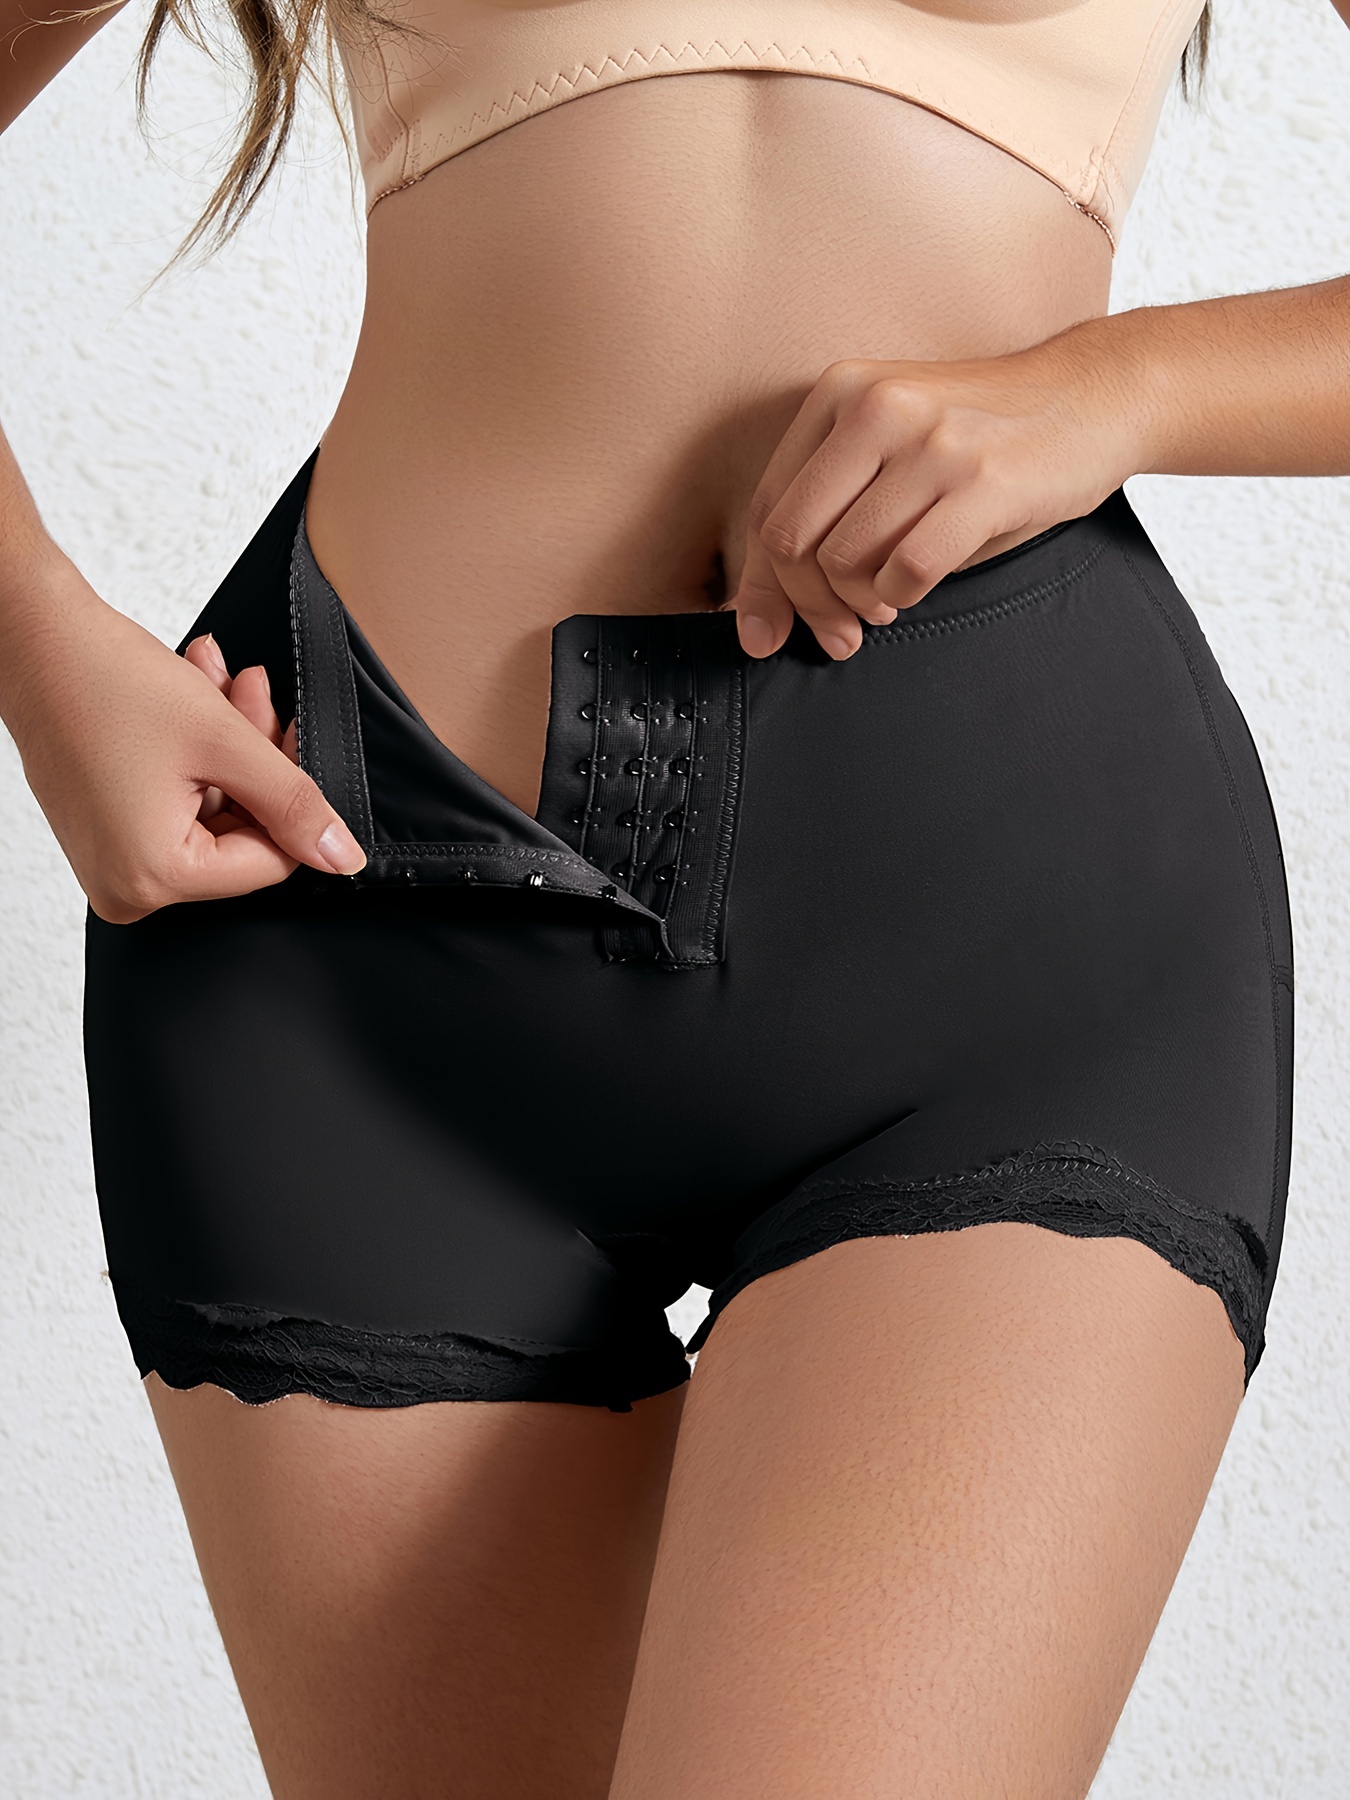 Butt Lifter Shorts Underwear Briefs Women Body Shaper Control Panties Sexy  Ass Lift Up Panty Boyshorts Buttock Open Hip Shaping